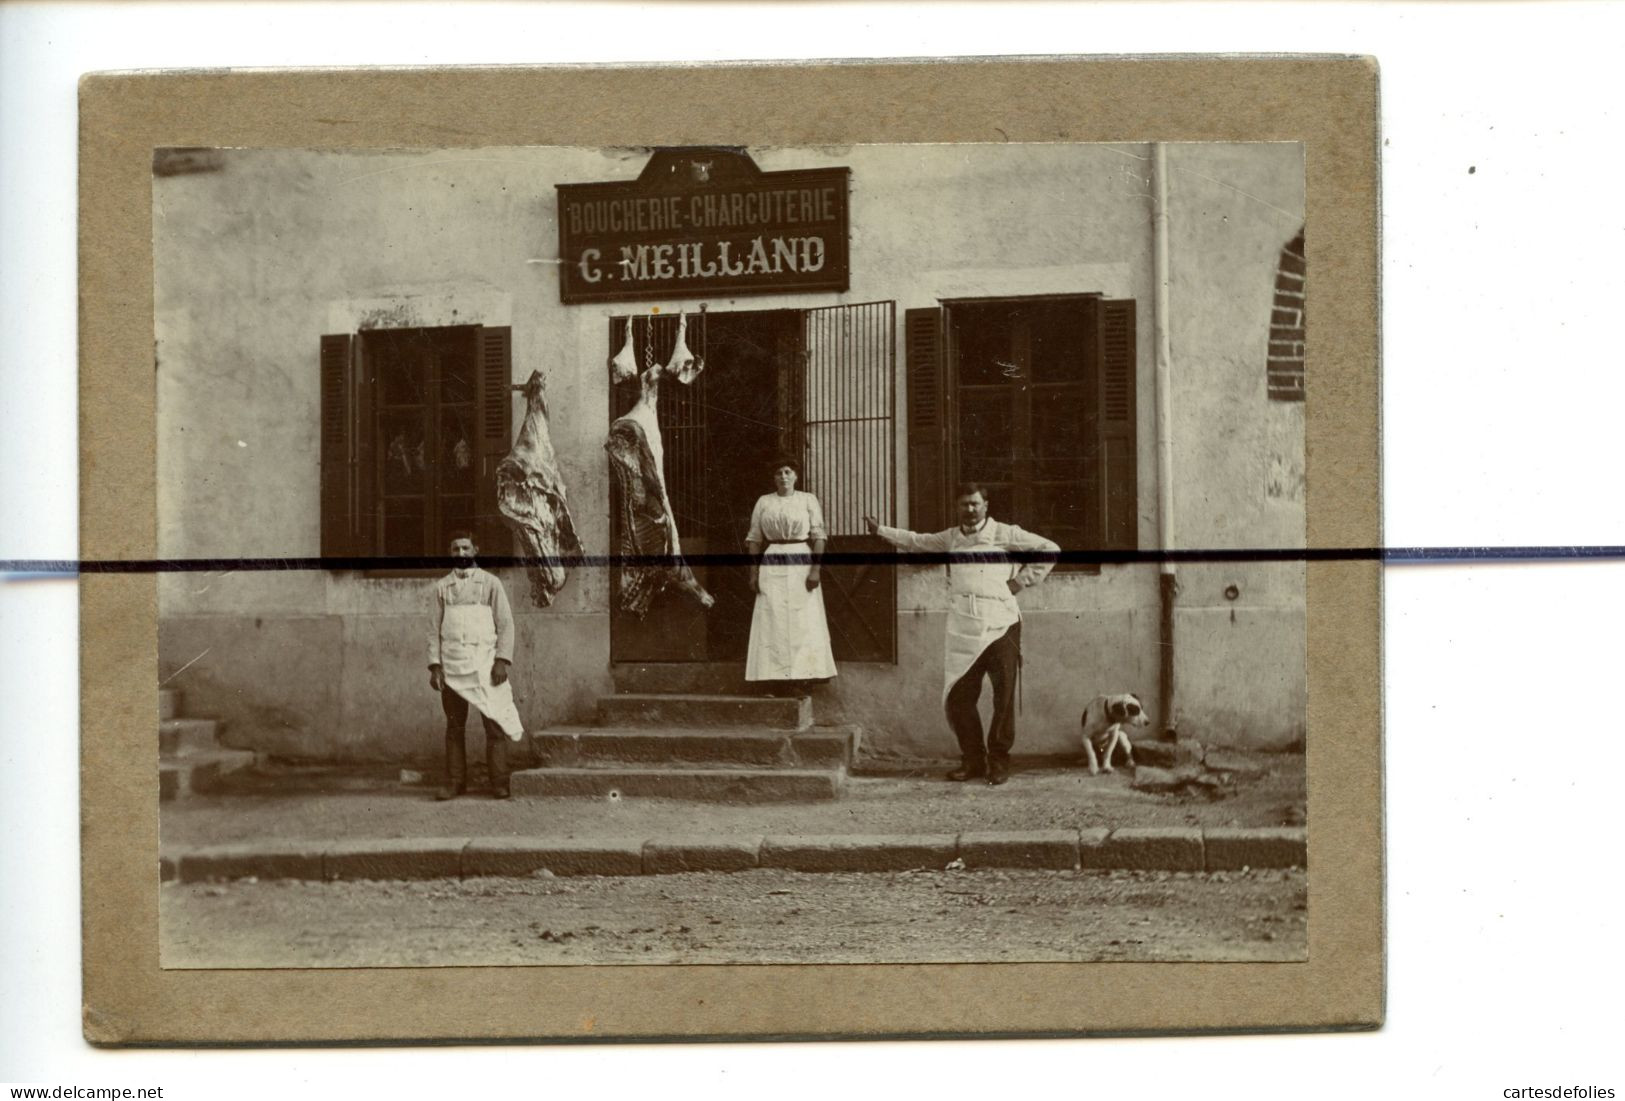 PHOTOGRAPHIE A Identifier. Devanture DE LA Boucherie Charcuterie C. MEILLAND . Personages Devant L'etablissement - Places